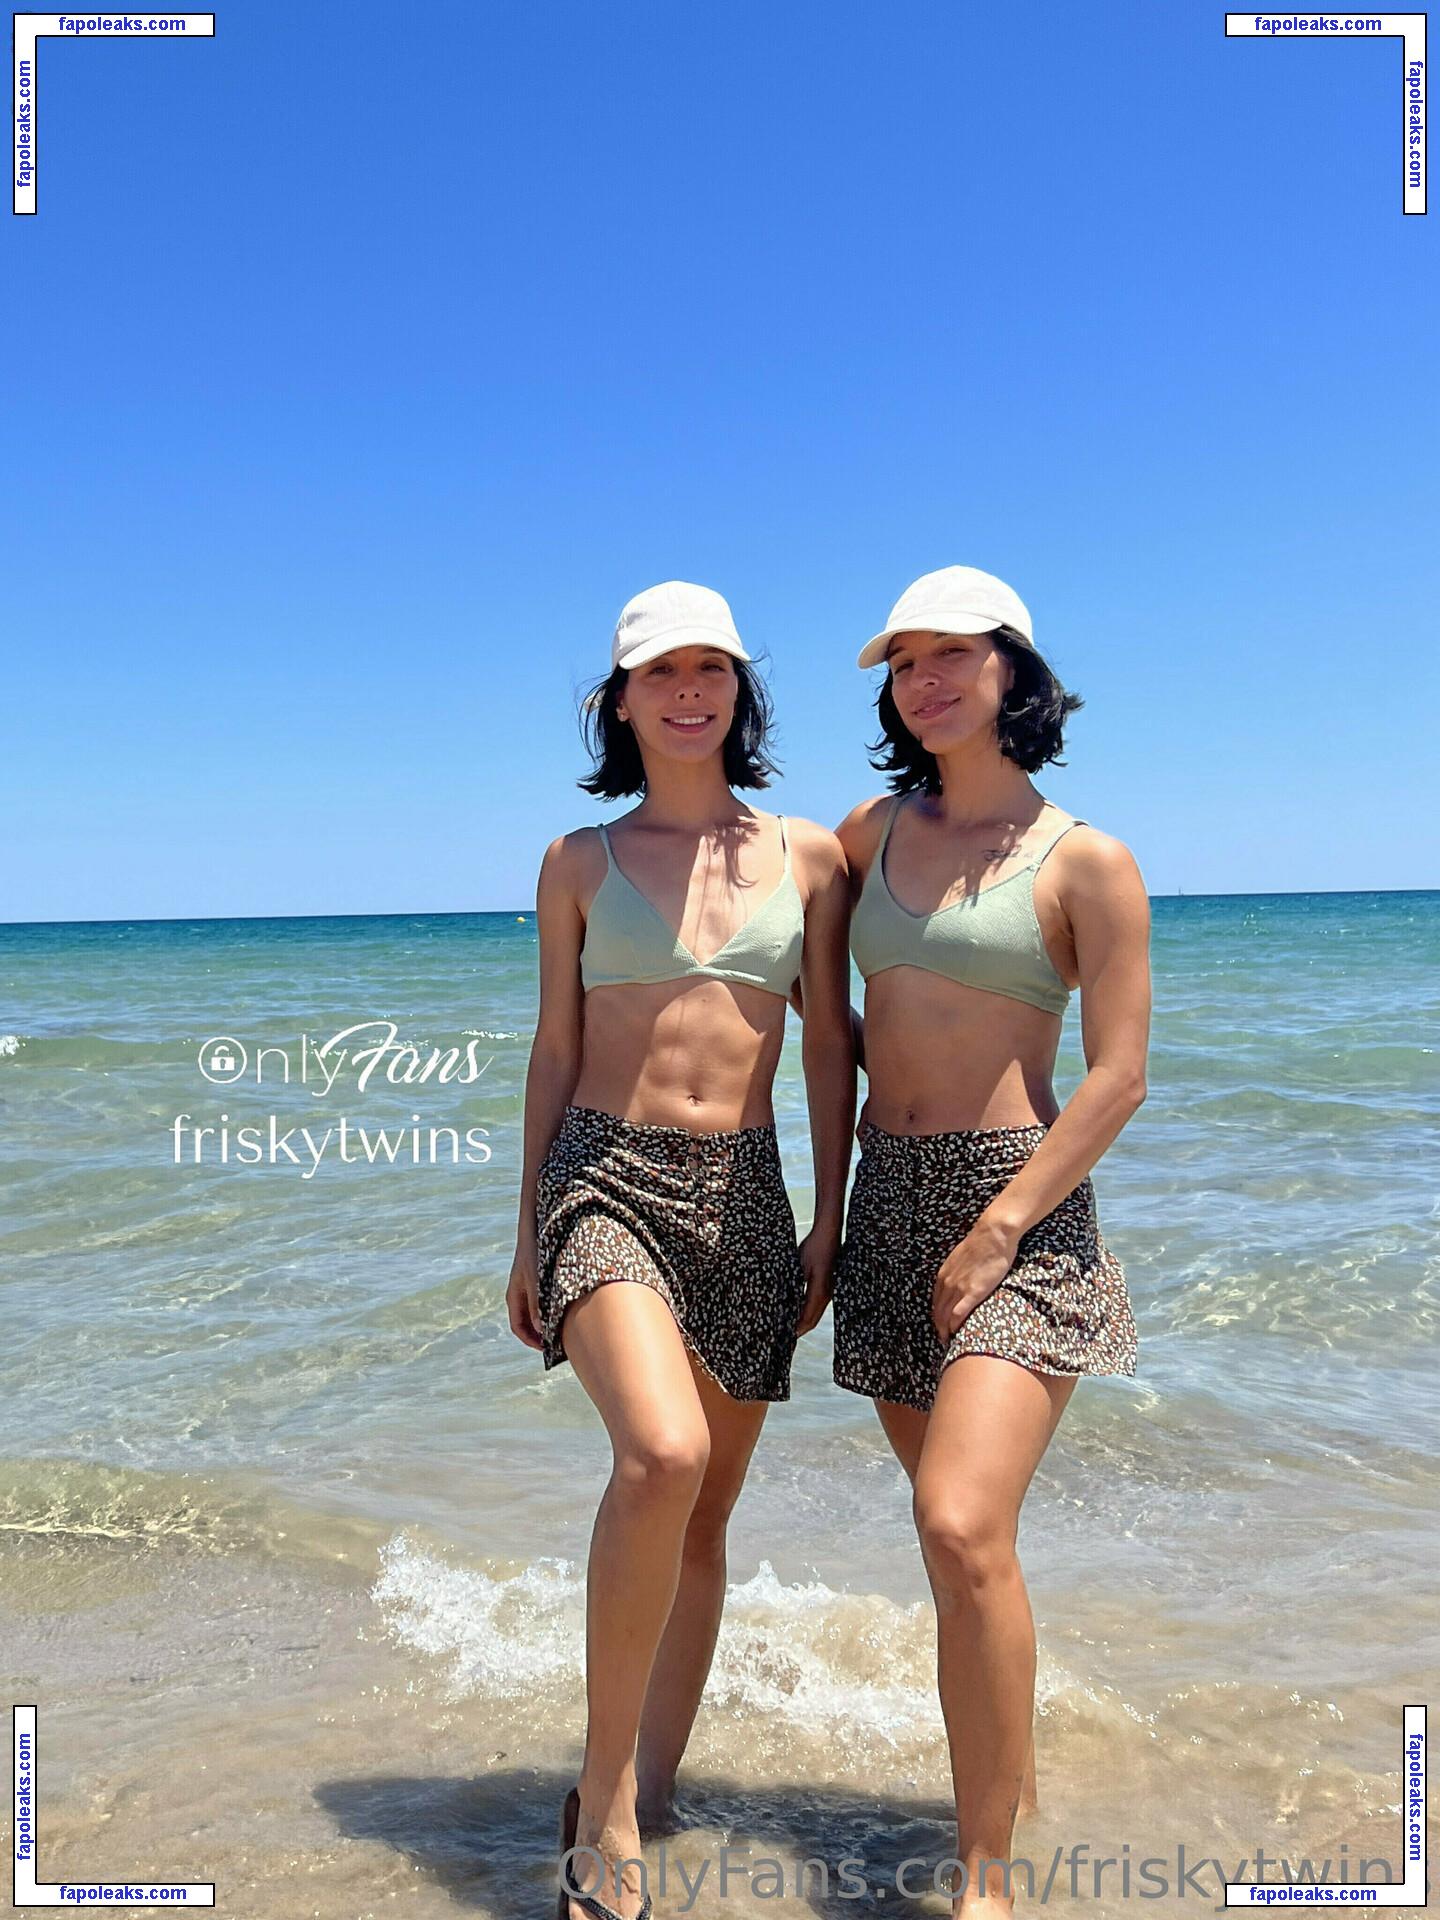 Frisky Twins / FriskyAna / FriskyIsa / frisky_ana / friskytwins nude photo #0107 from OnlyFans